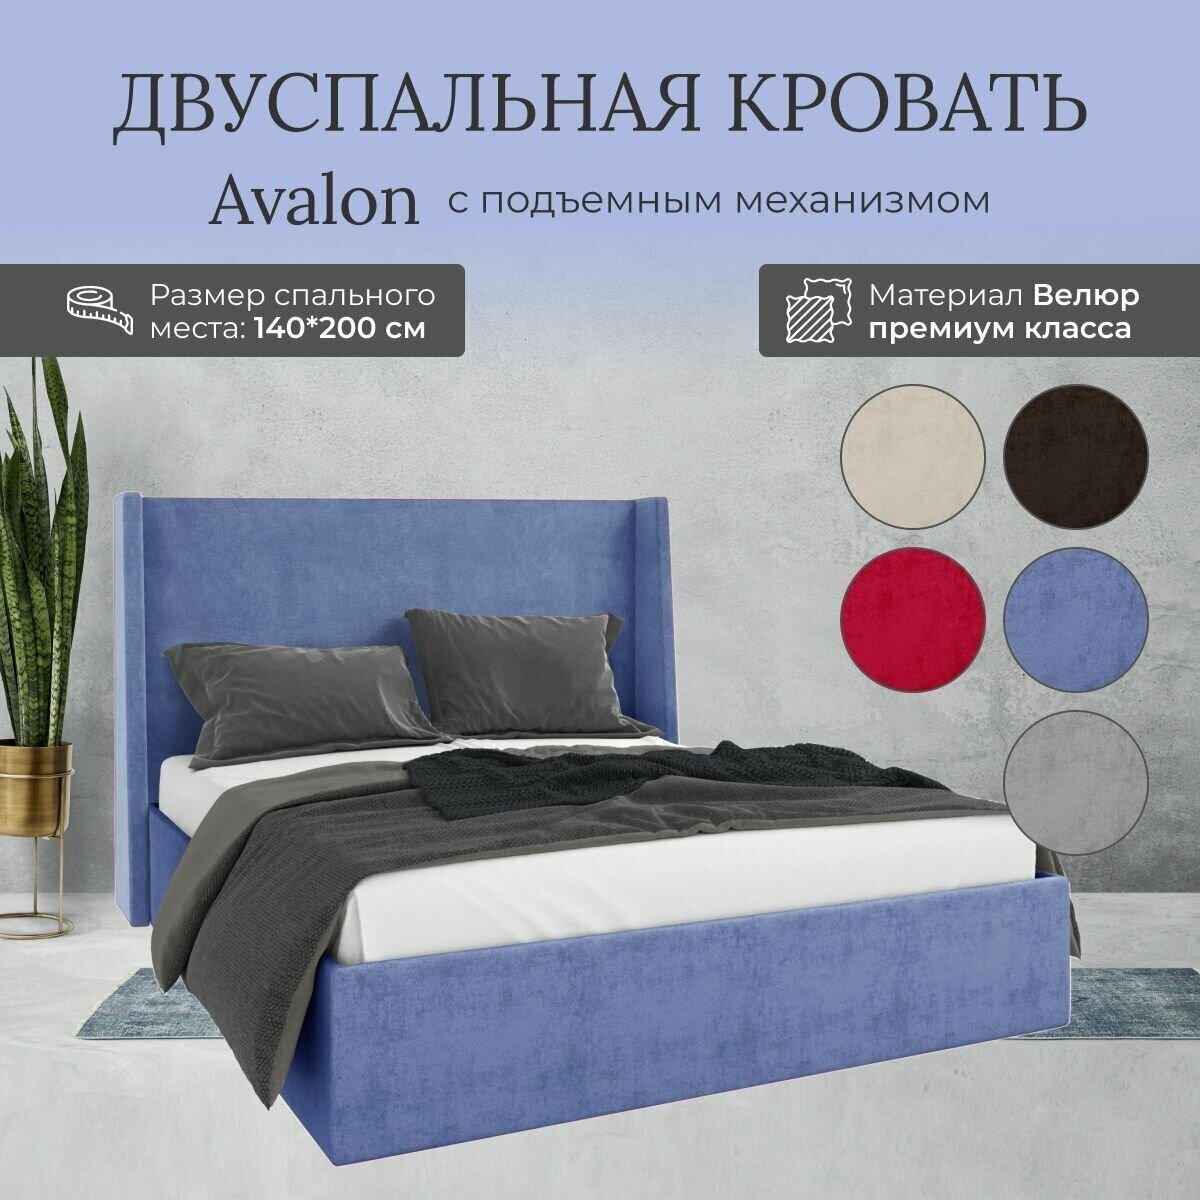 Кровать с подъемным механизмом Luxson Avalon двуспальная размер 140х200